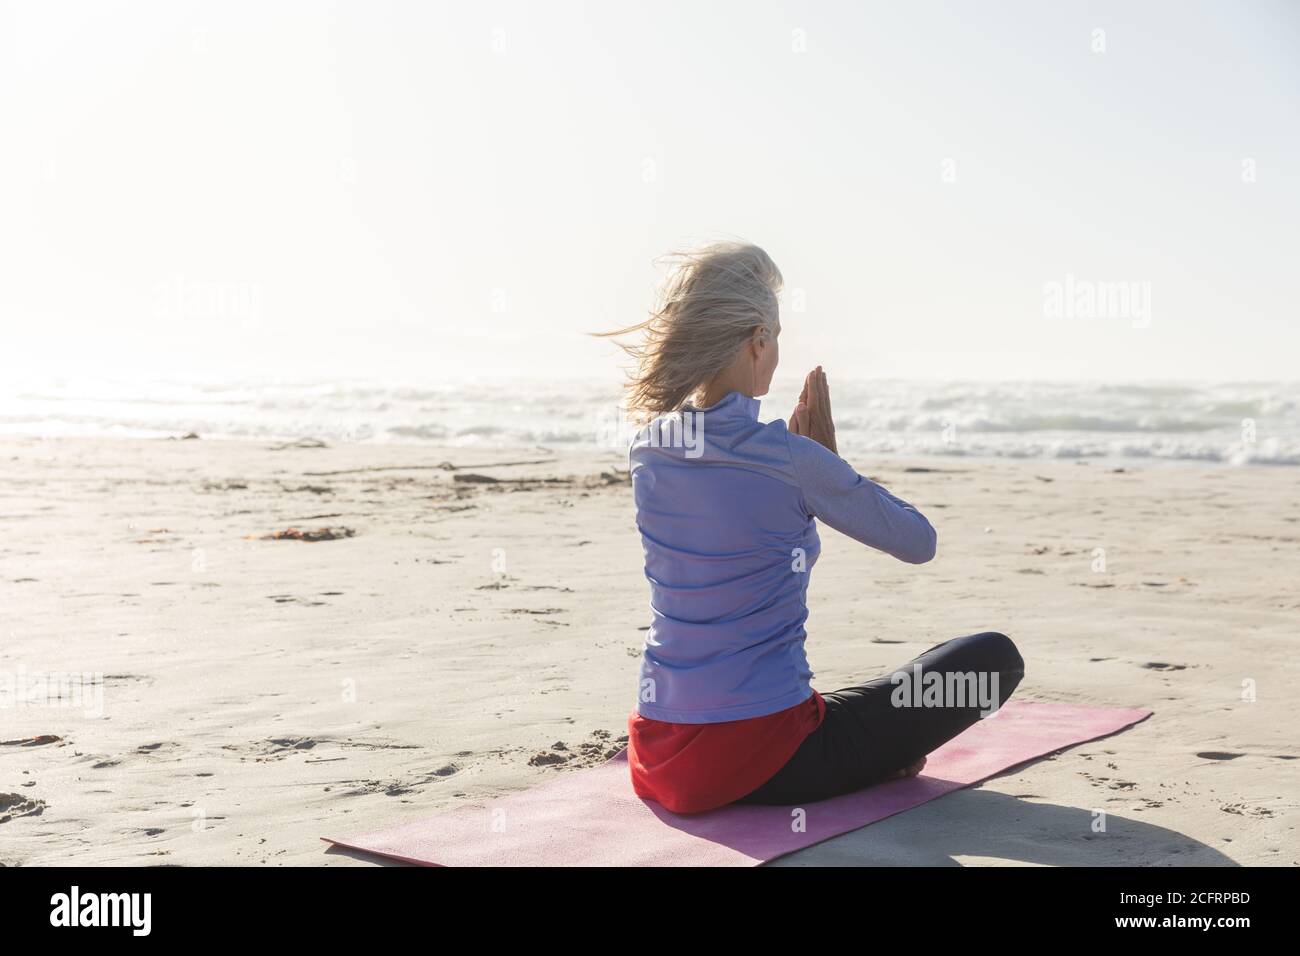 Vista trasera de la mujer practicando yoga en la playa Foto de stock